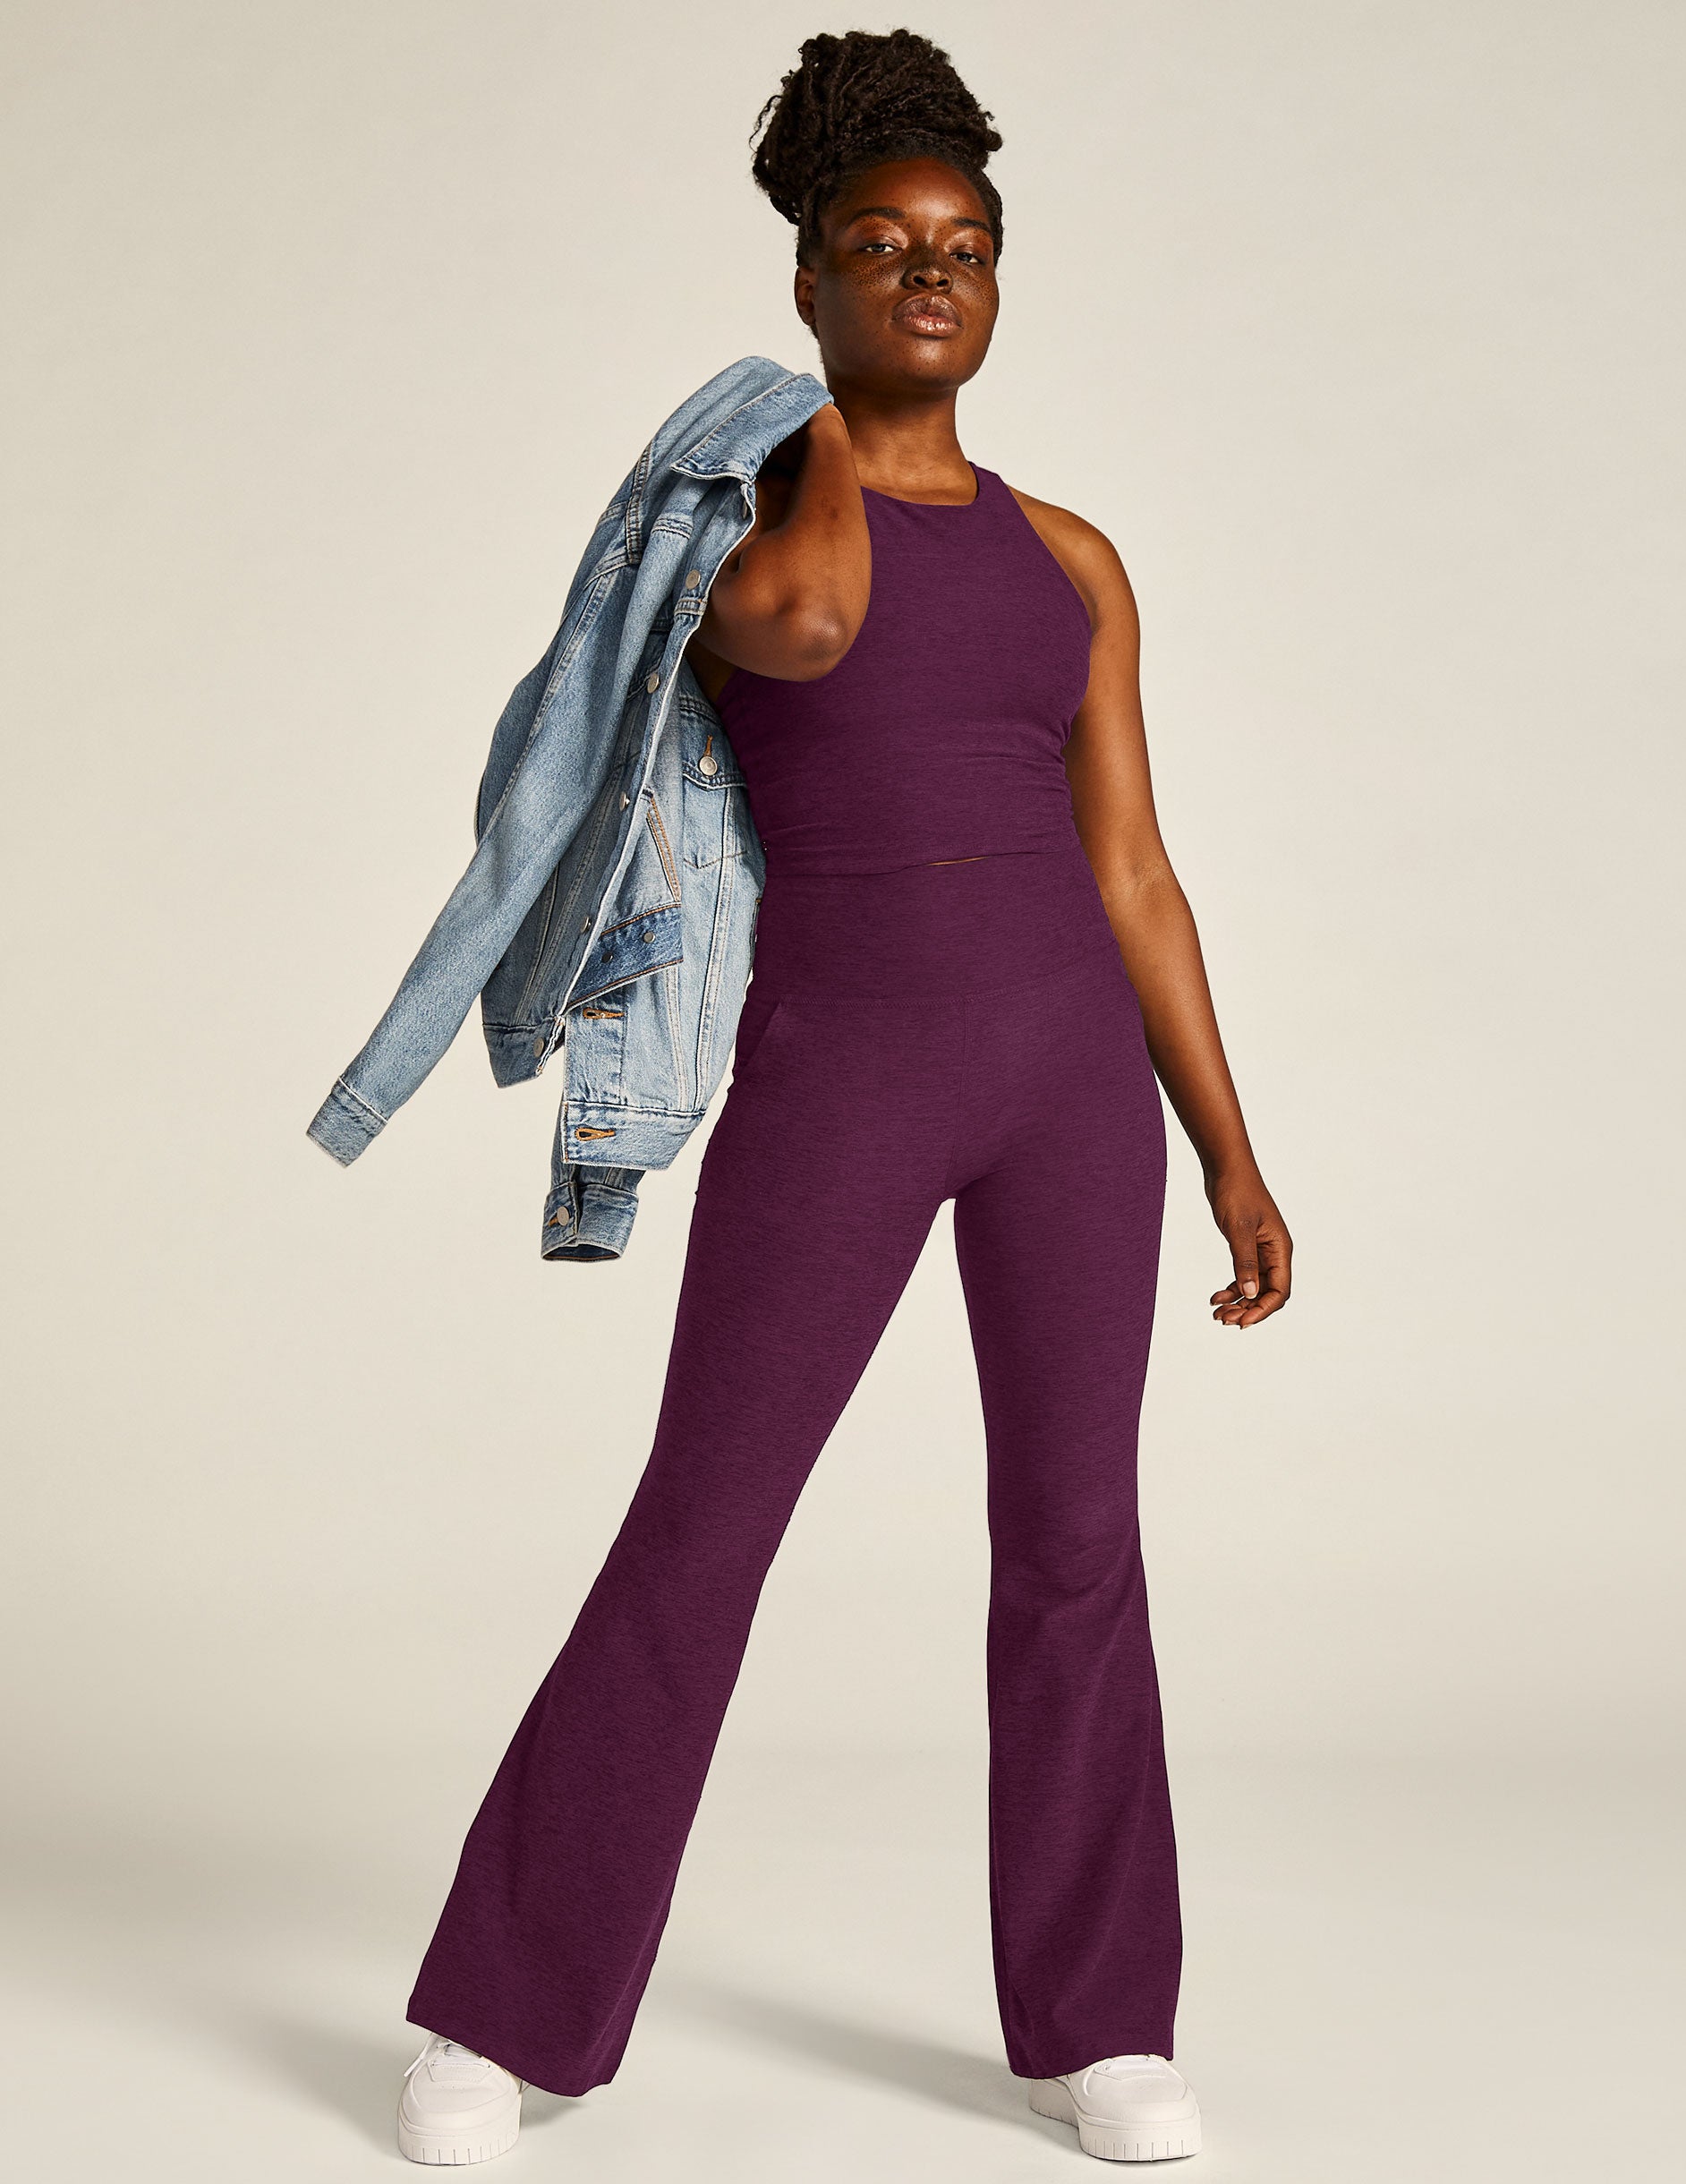 purple high-waisted pocket flare pants. 